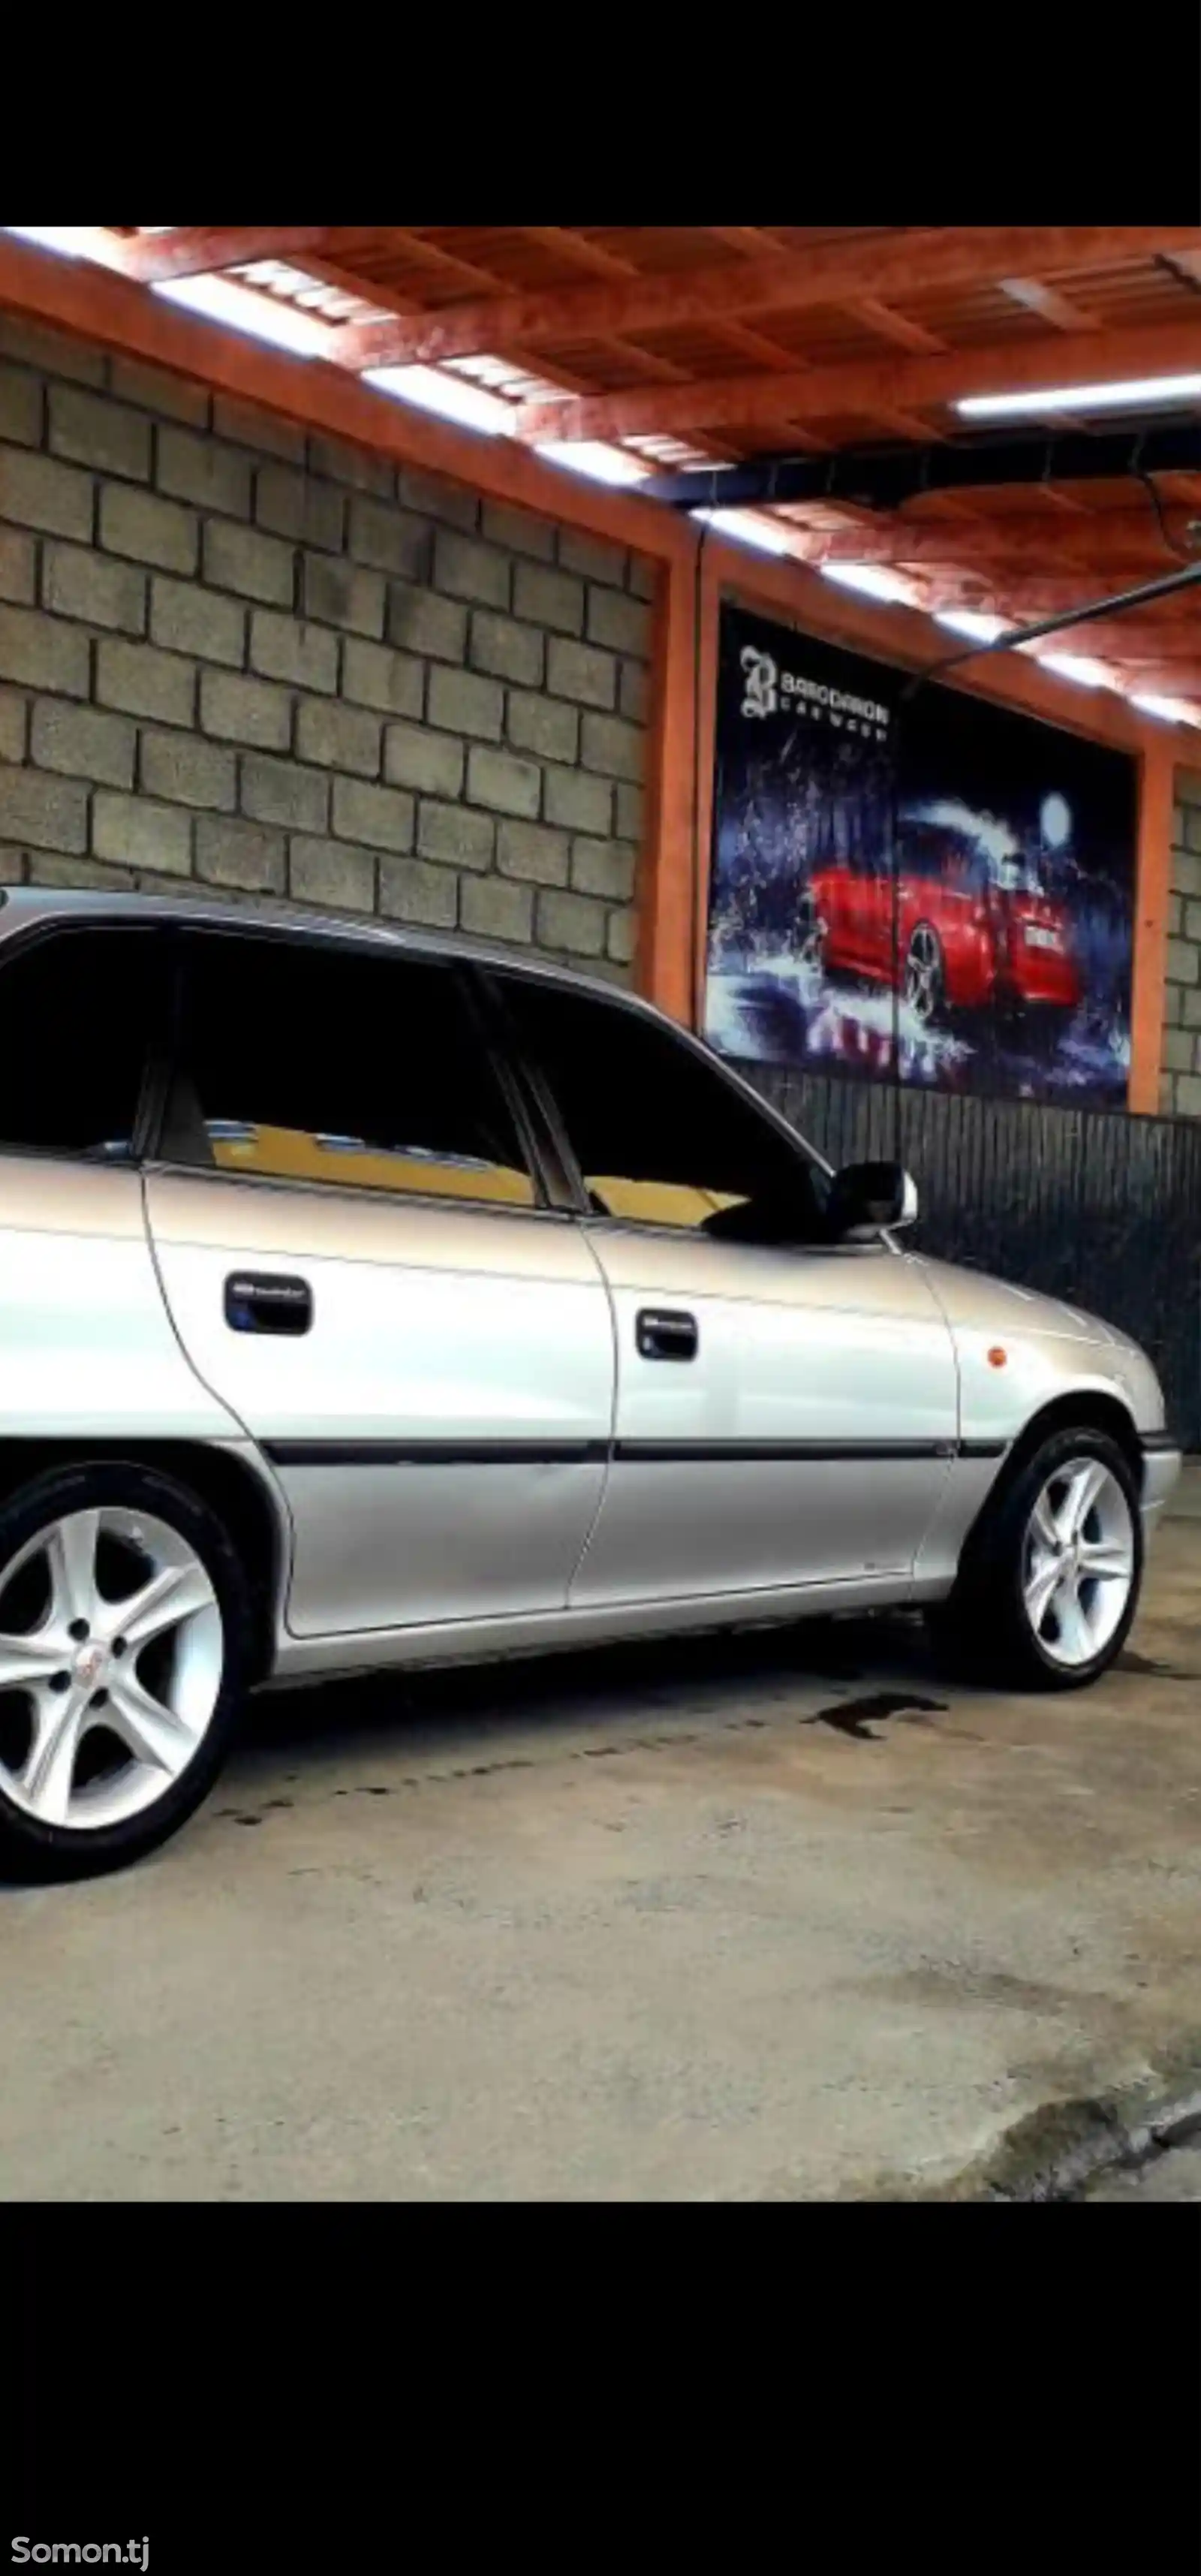 Opel Astra F, 1998